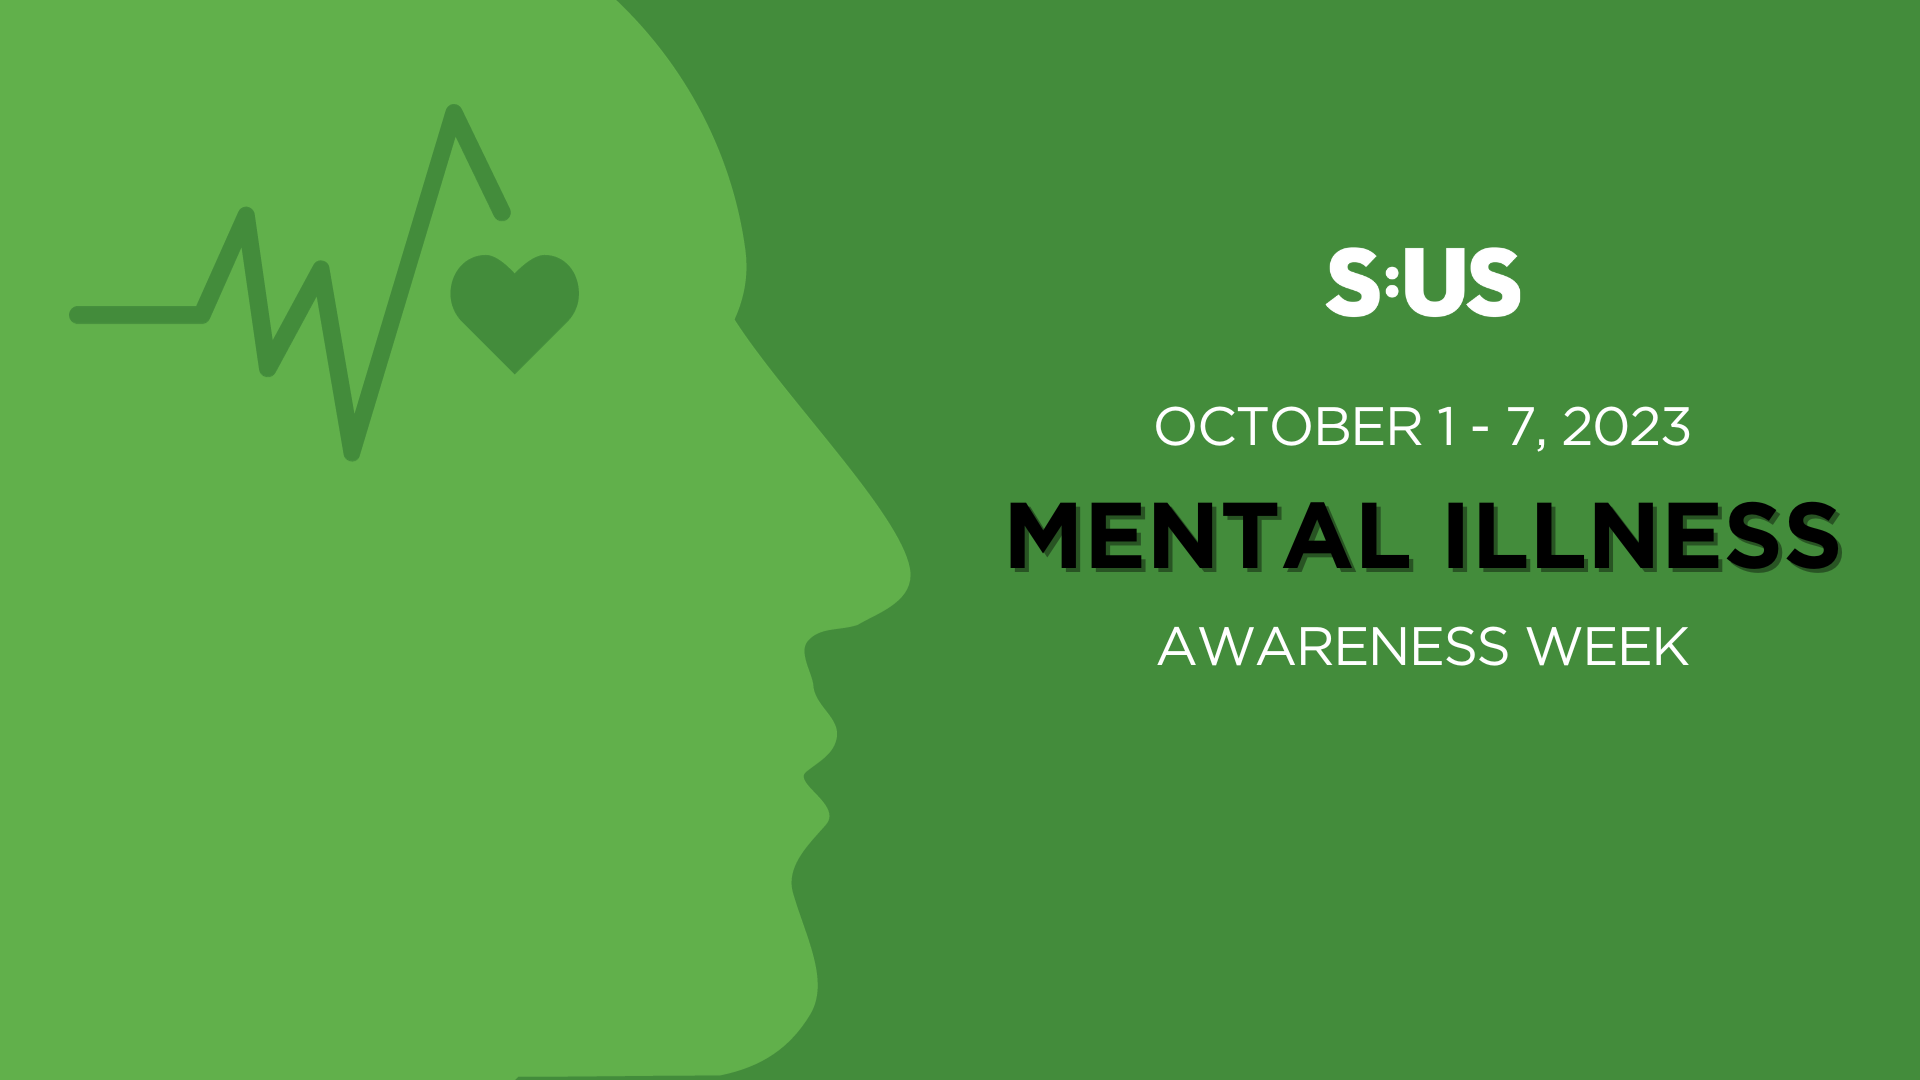 2023 Mental Illness Awareness Week